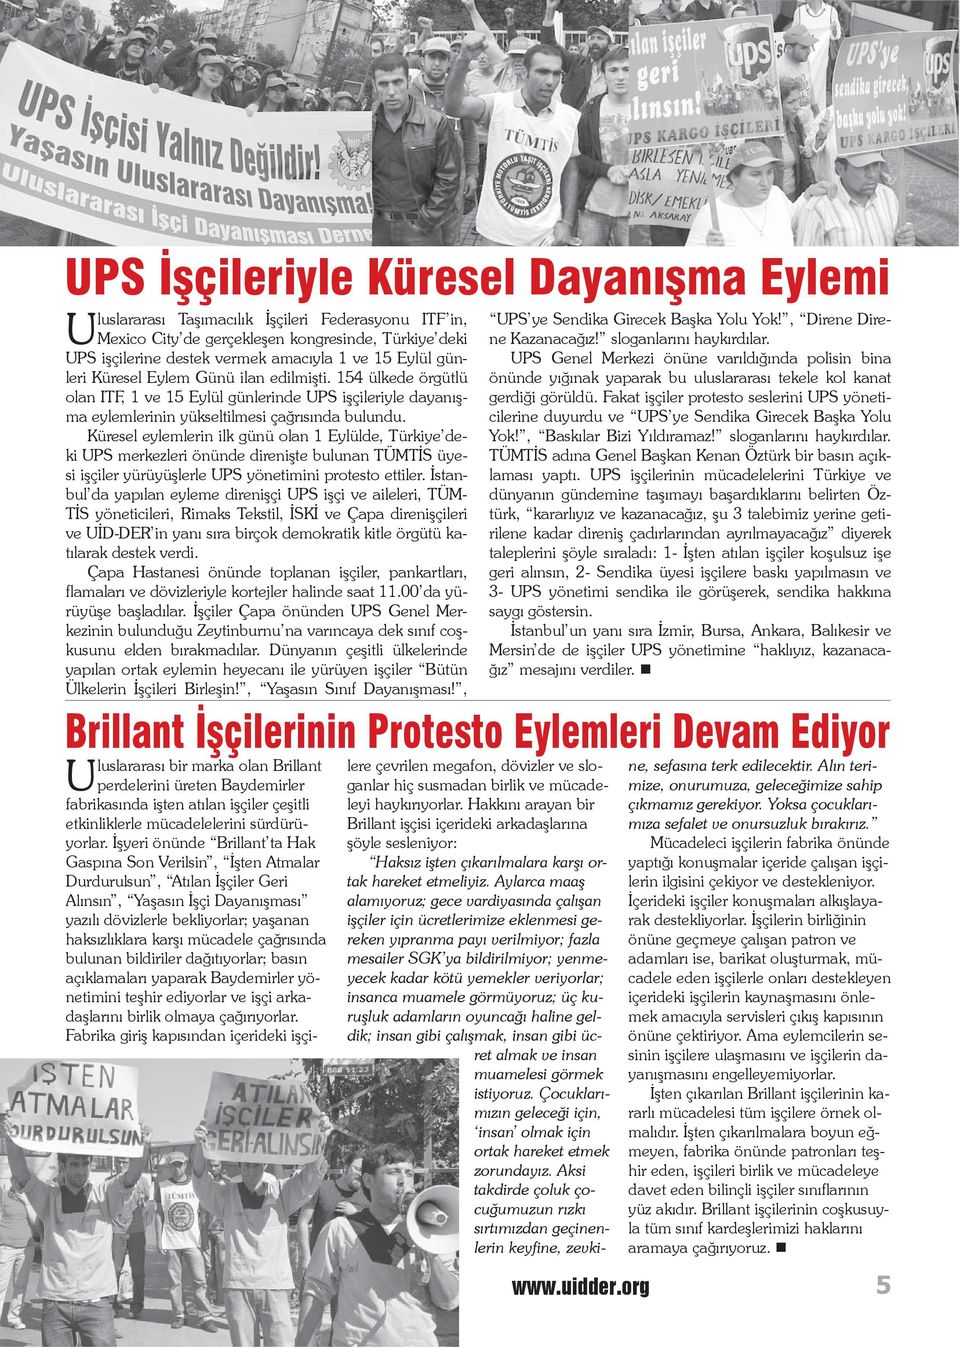 Küresel eylemlerin ilk günü olan 1 Eylülde, Türkiye deki UPS merkezleri önünde direnişte bulunan TÜMTİS üyesi işçiler yürüyüşlerle UPS yönetimini protesto ettiler.